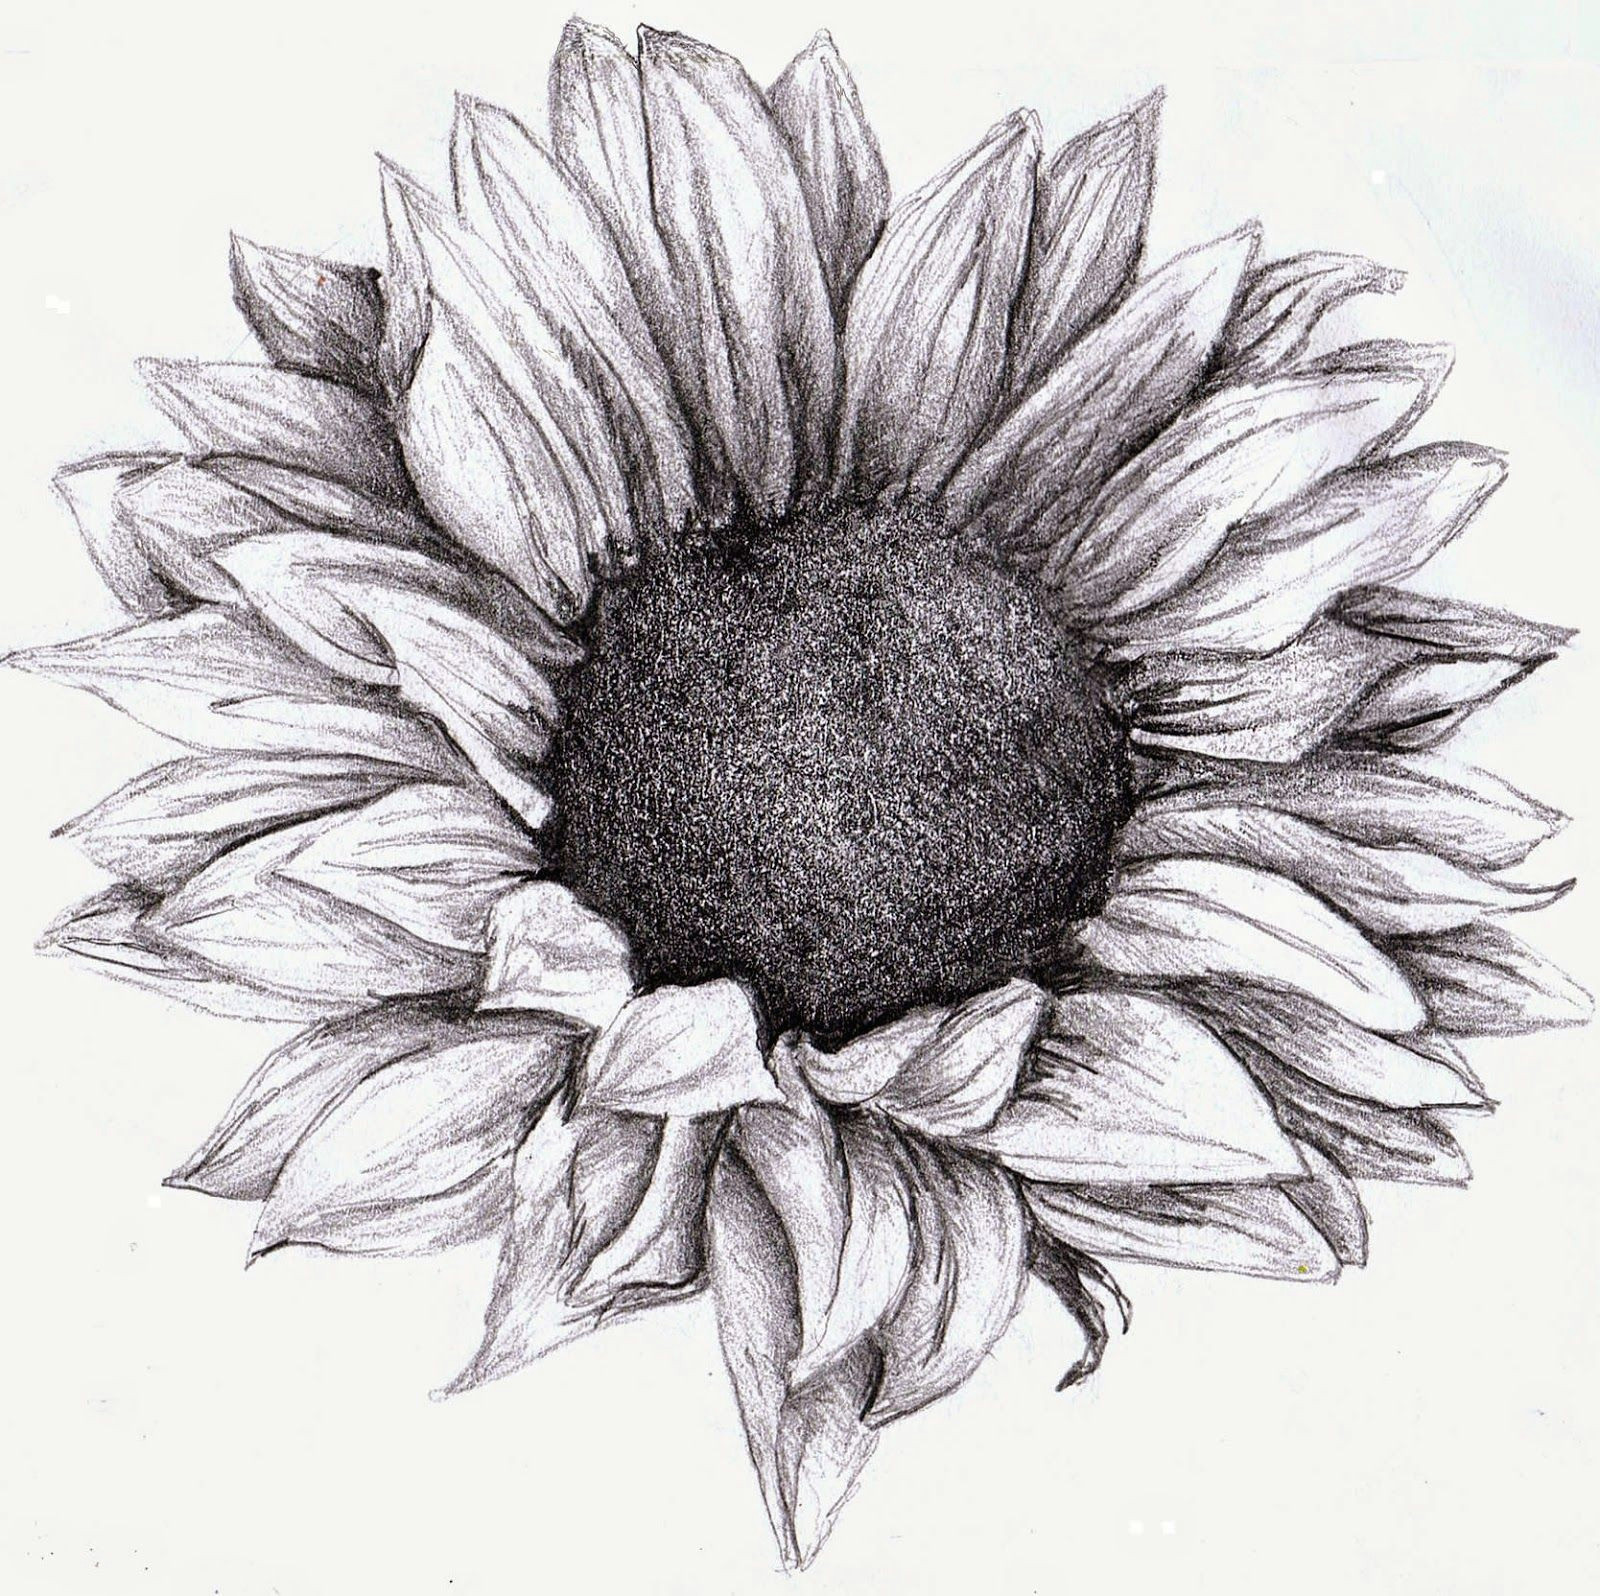 Flowers Drawing Sunflower Sunflower Drawing Google Zoeken Tattoos Tattoos Sunflower